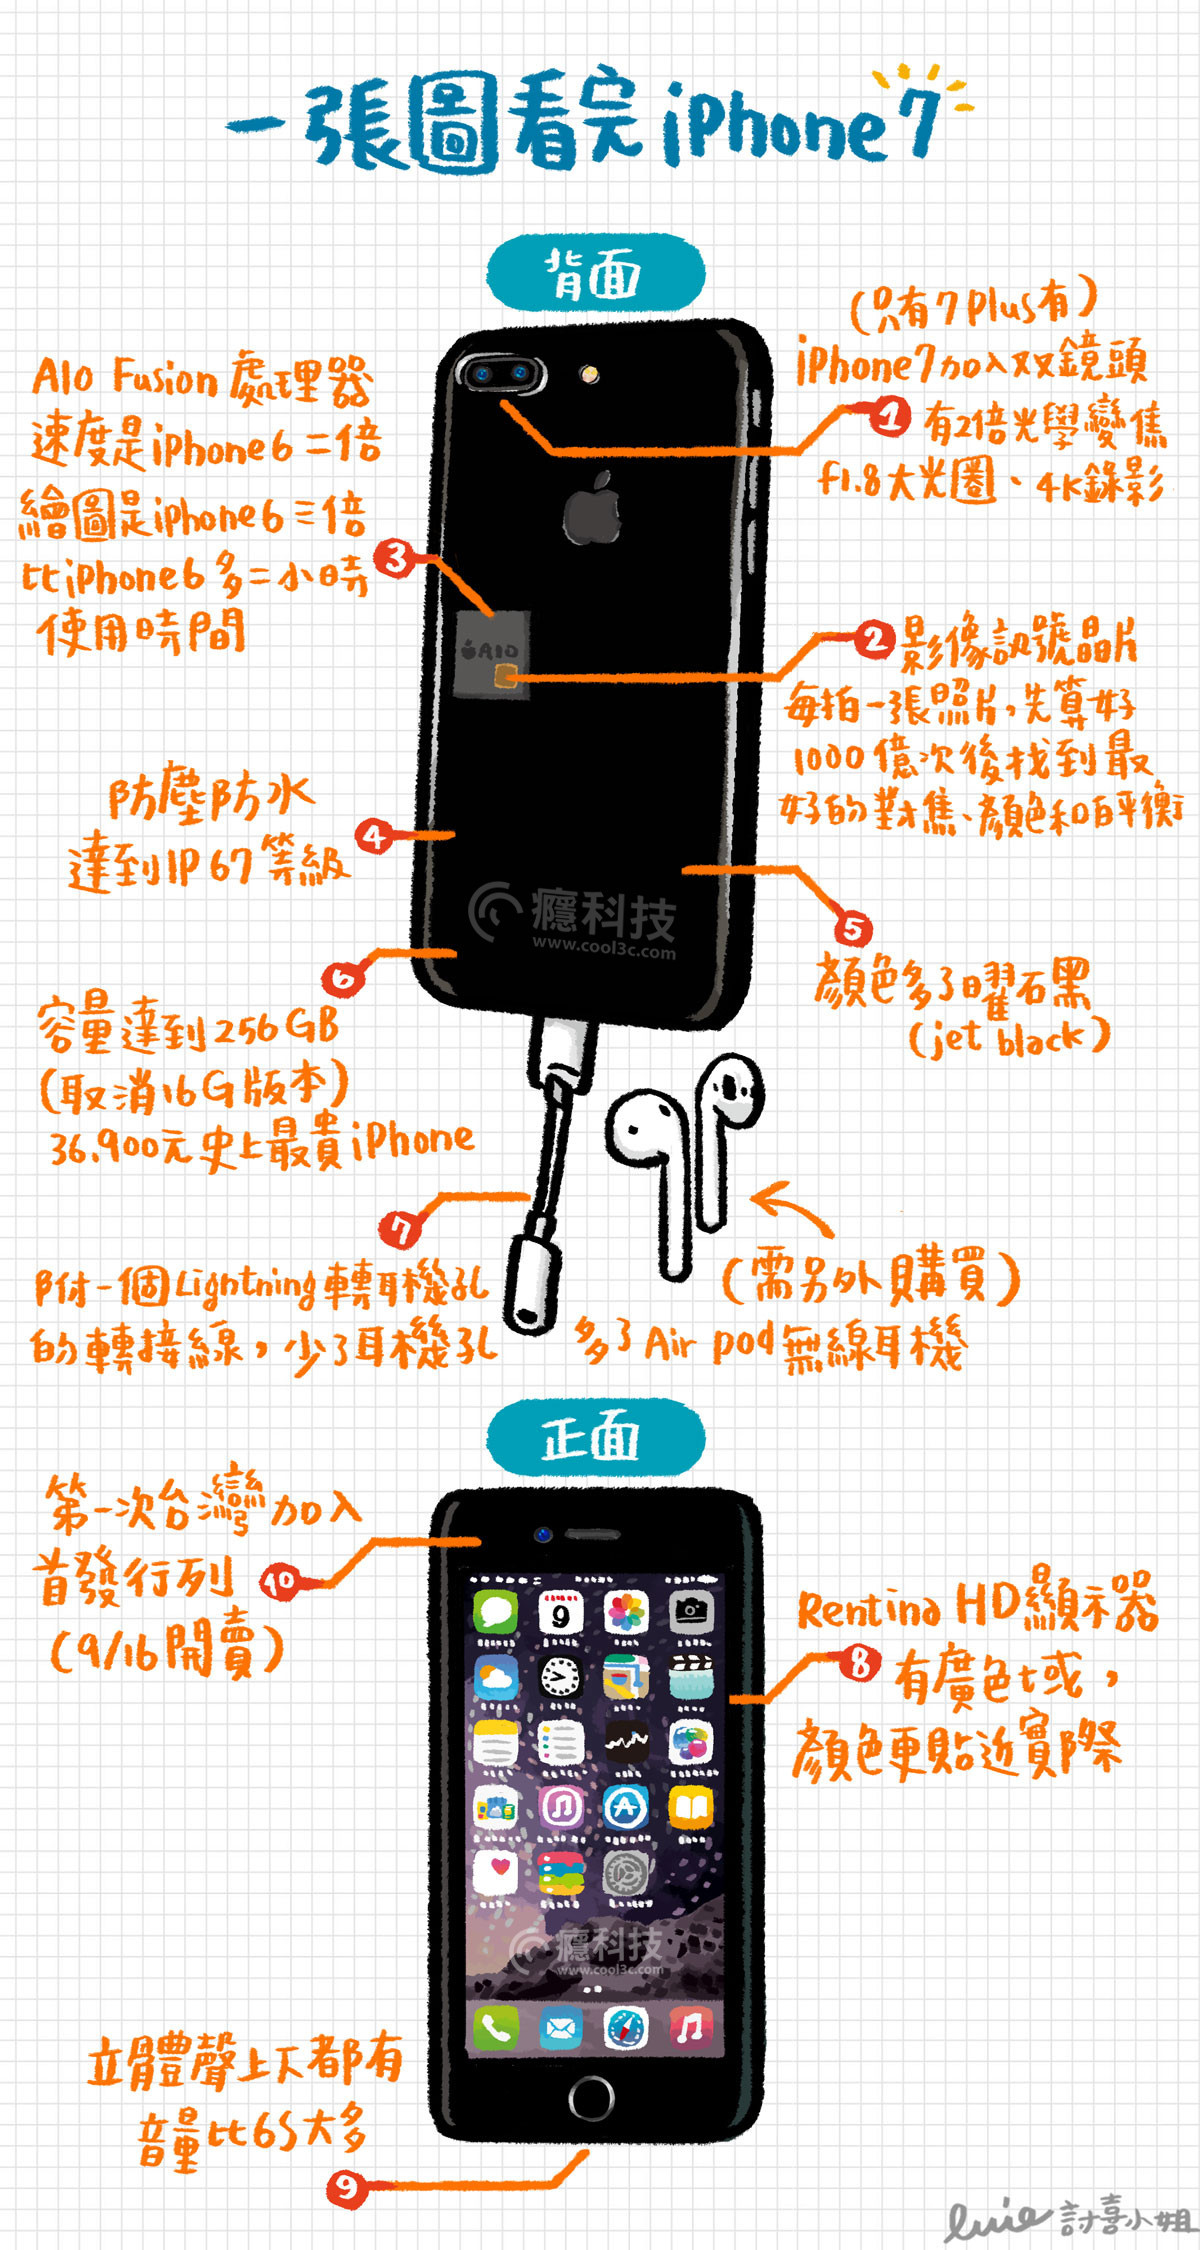 一圖看懂iphone 7 Iphone 7 Plus 十大特點 看完這張就明瞭 Appleevent16 Cool3c